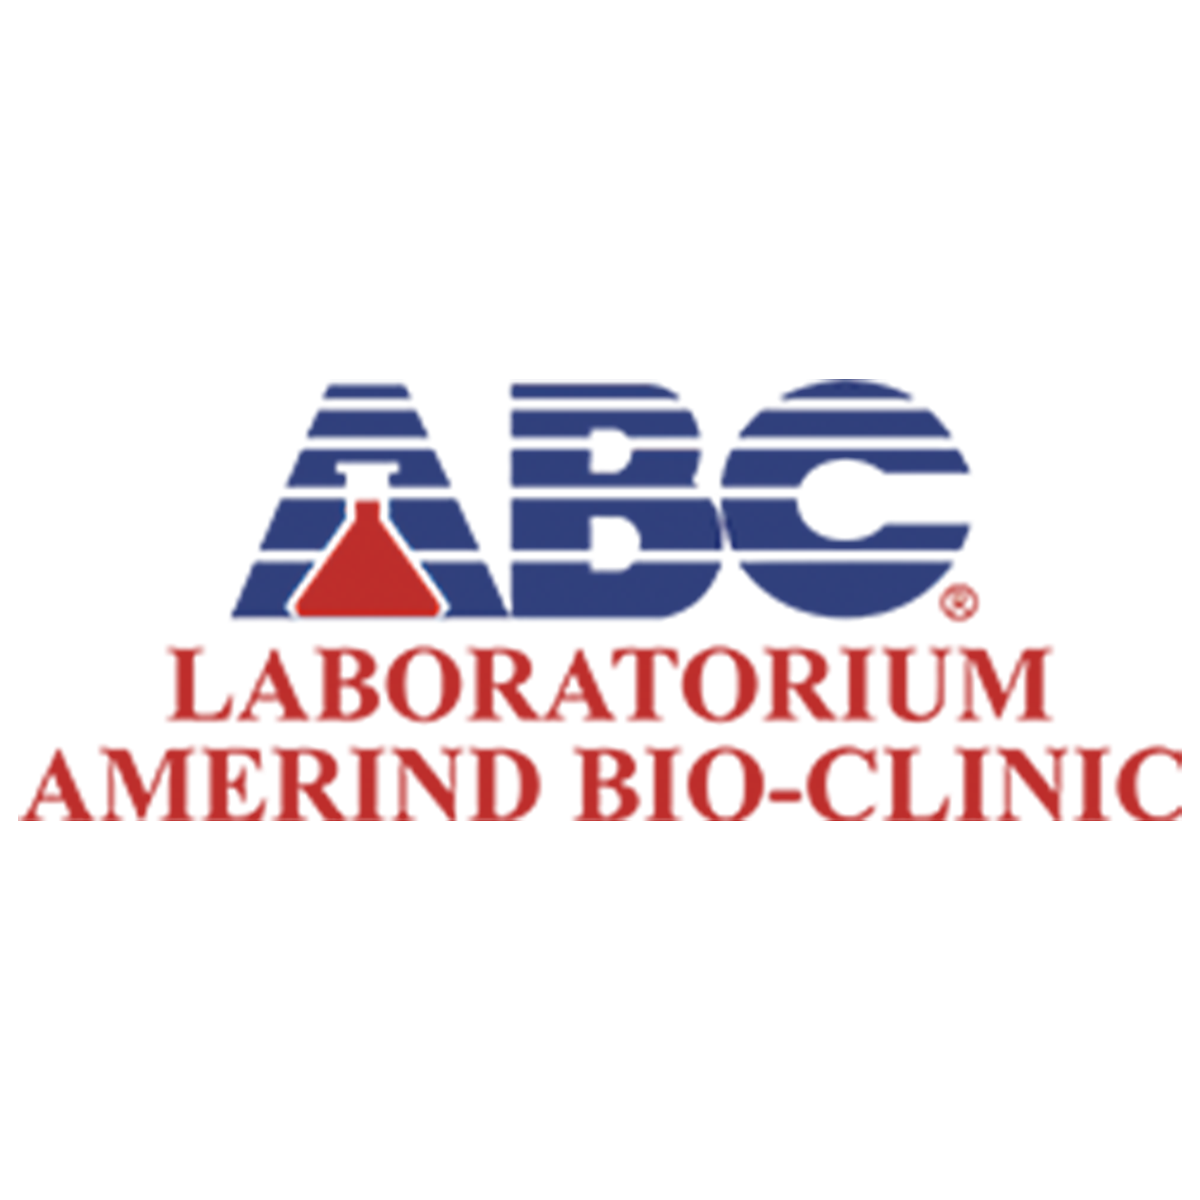 Laboratorium Amerind Bio-clinic logo